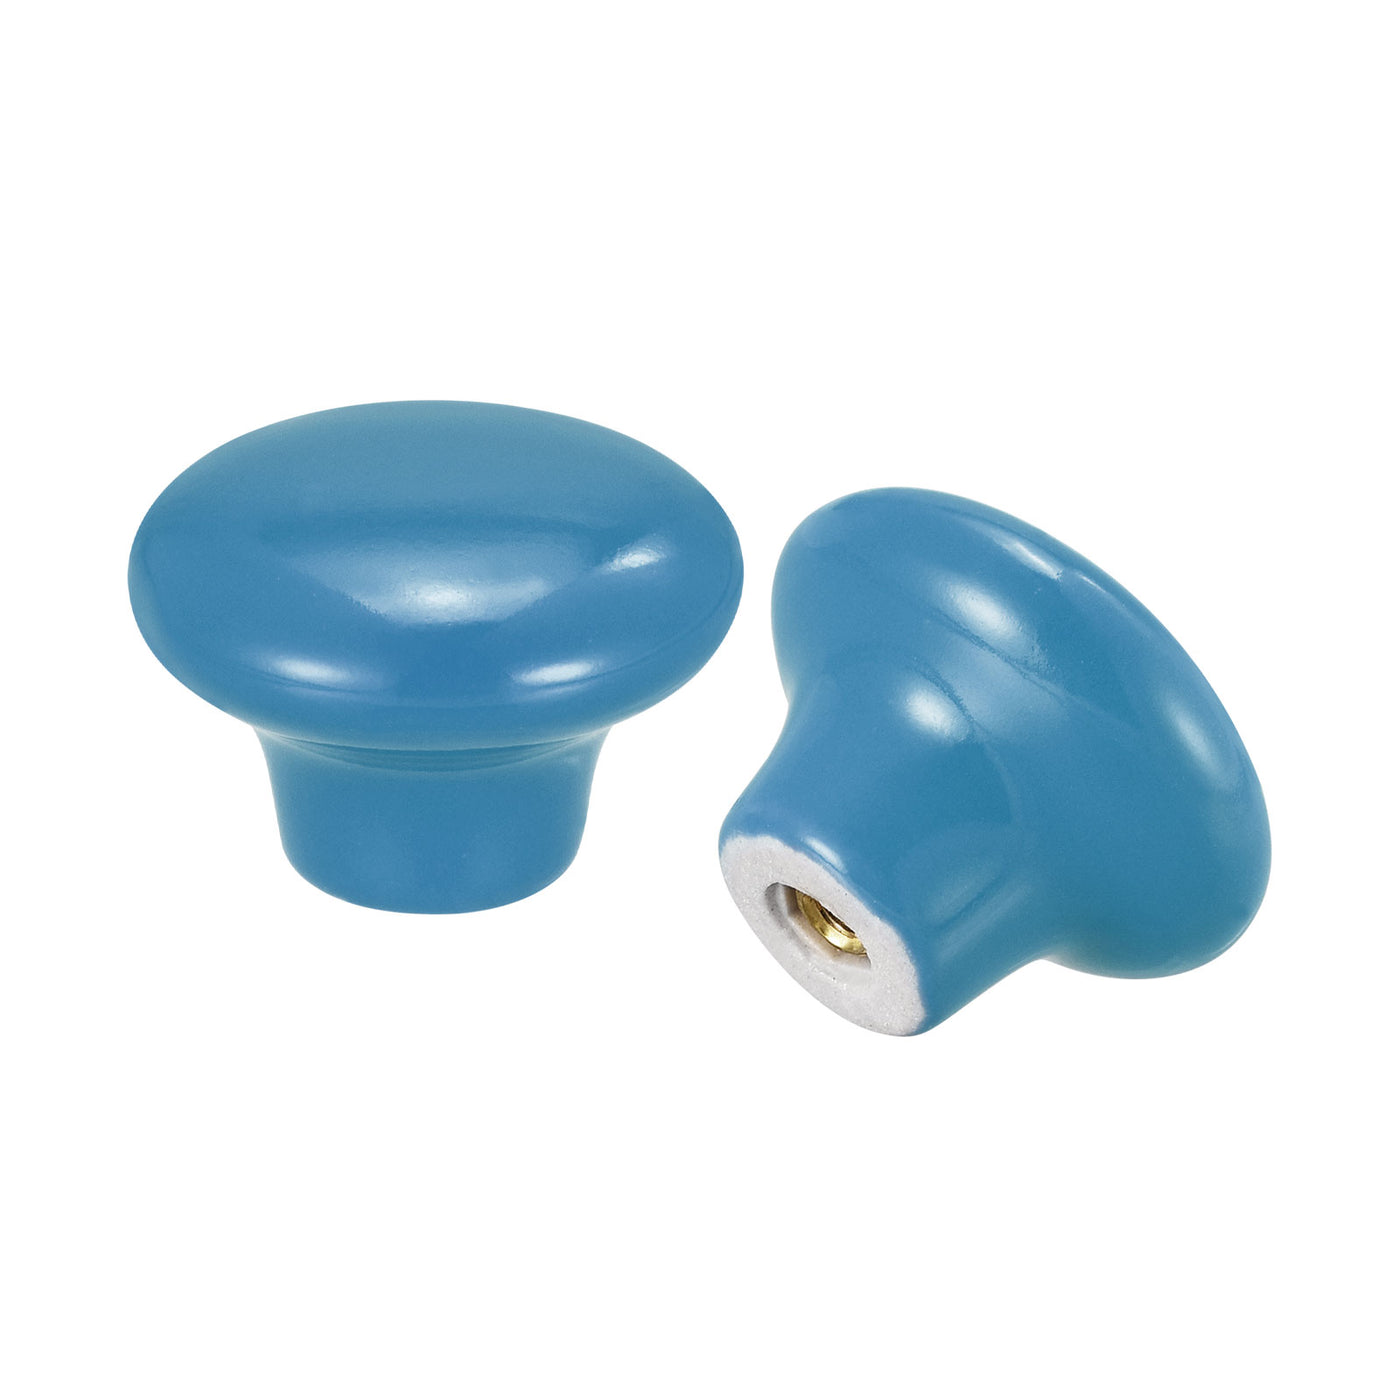 uxcell Uxcell 38x28mm Ceramic Drawer Knobs, 5pcs Mushroom Shape Door Pull Handles Blue